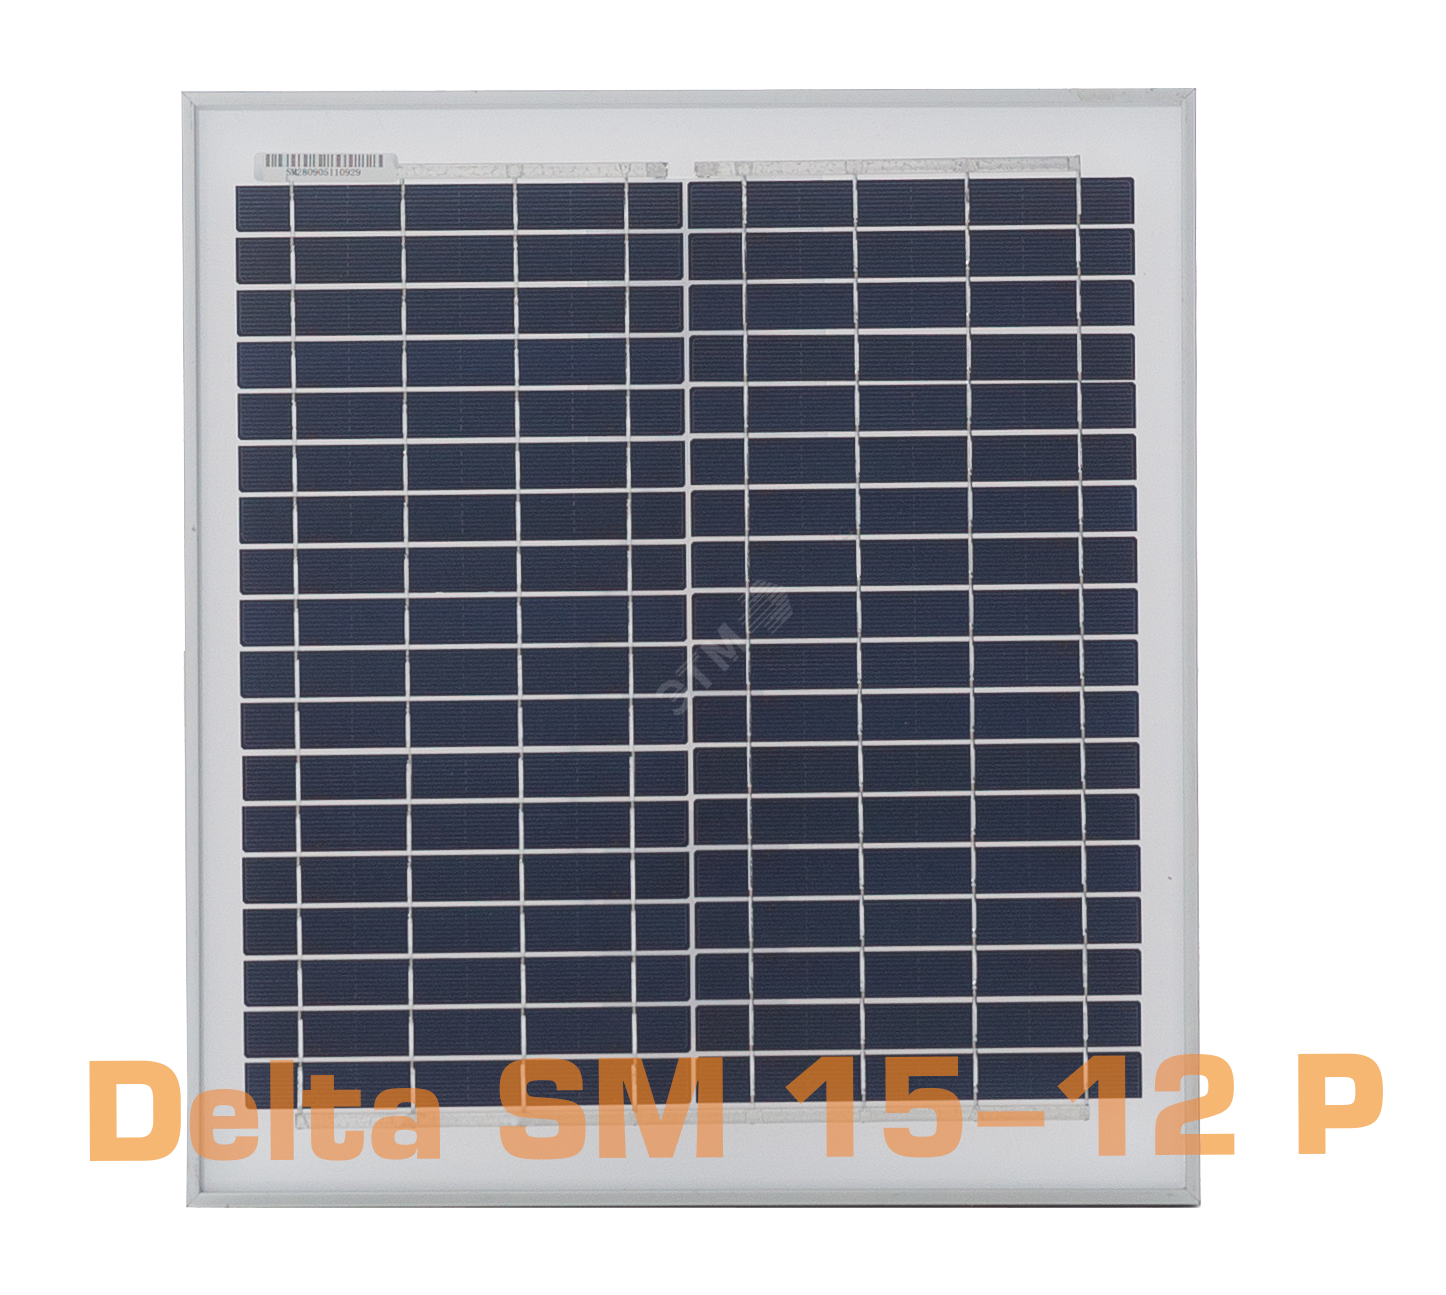 Фотоэлектрический солнечный модуль (ФСМ) SM 15-12 P Delta SM 15-12 P DELTA